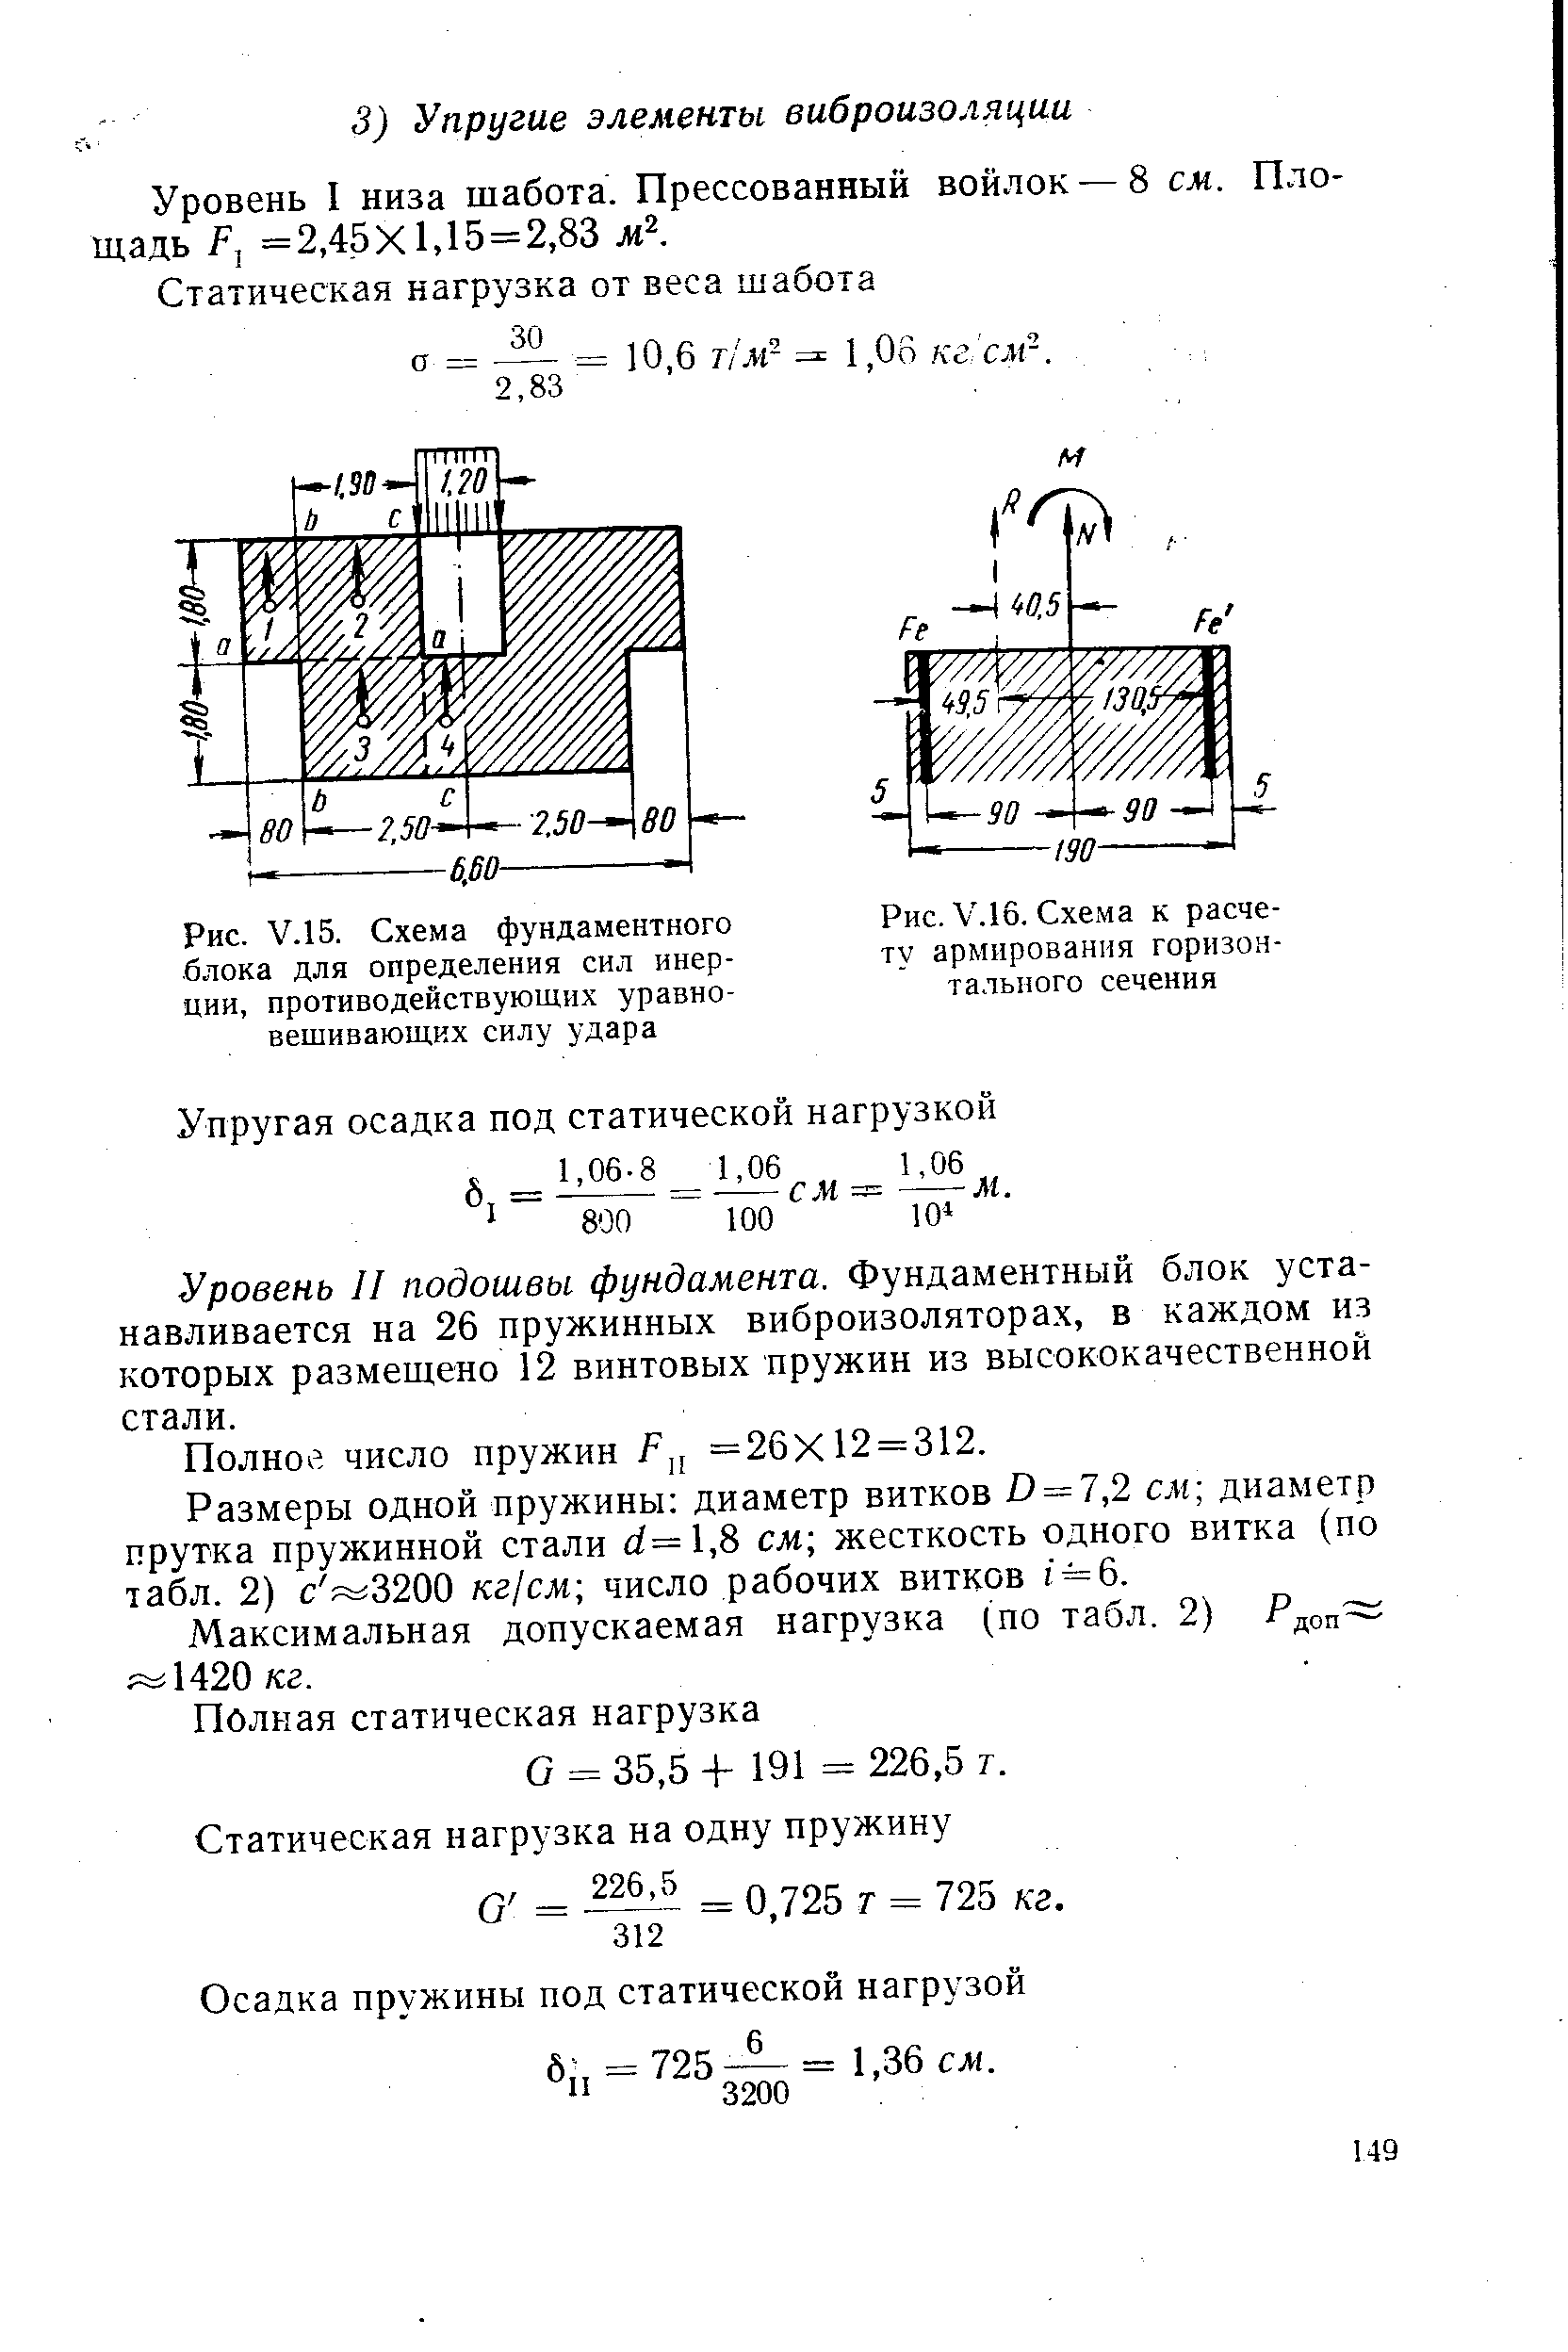 Рис. V.16. Схема к расчету армирования горизонтального сечения
